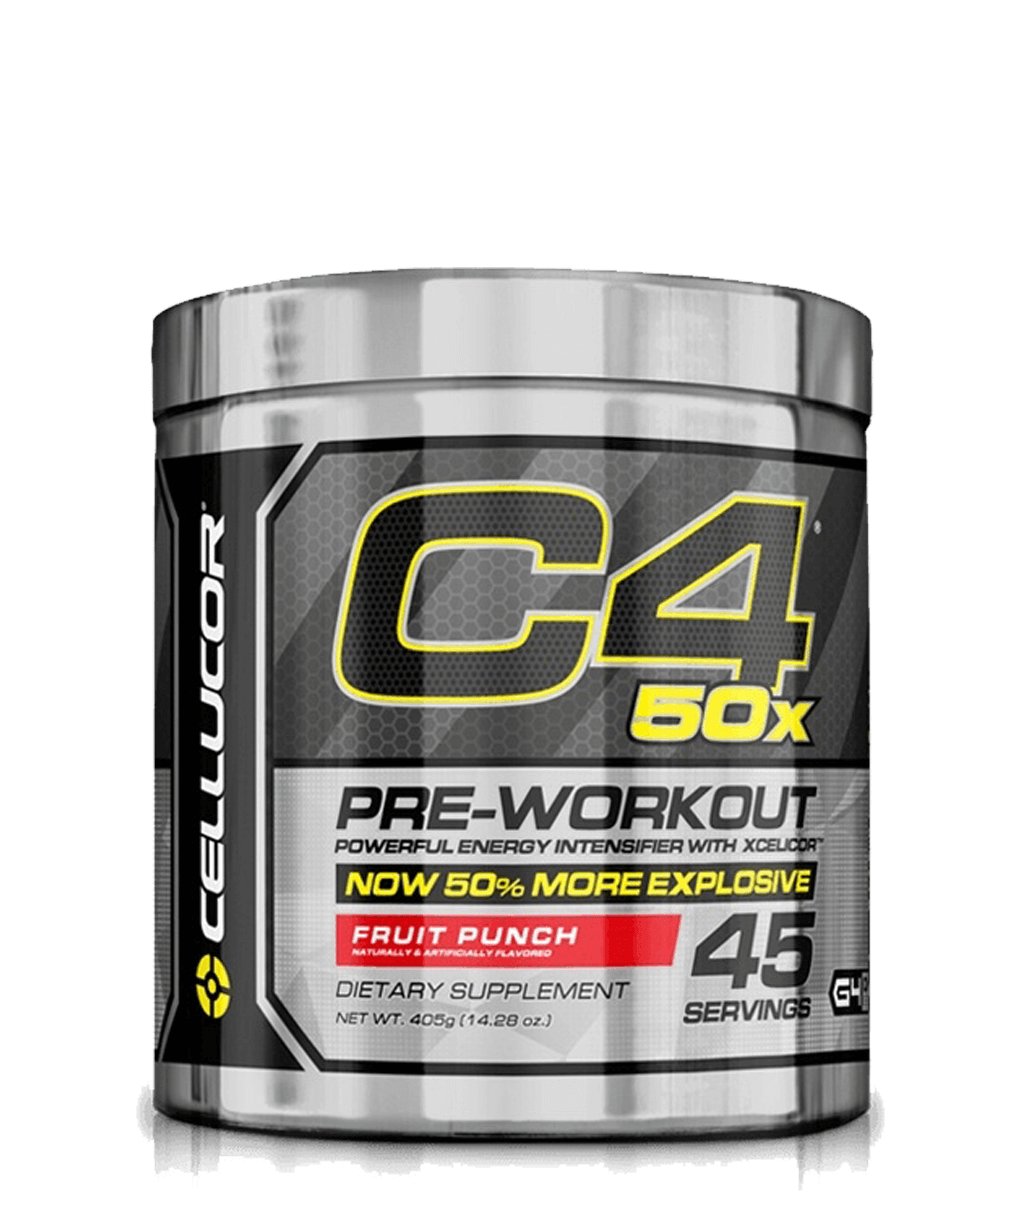 C4 50x Pre-Workout